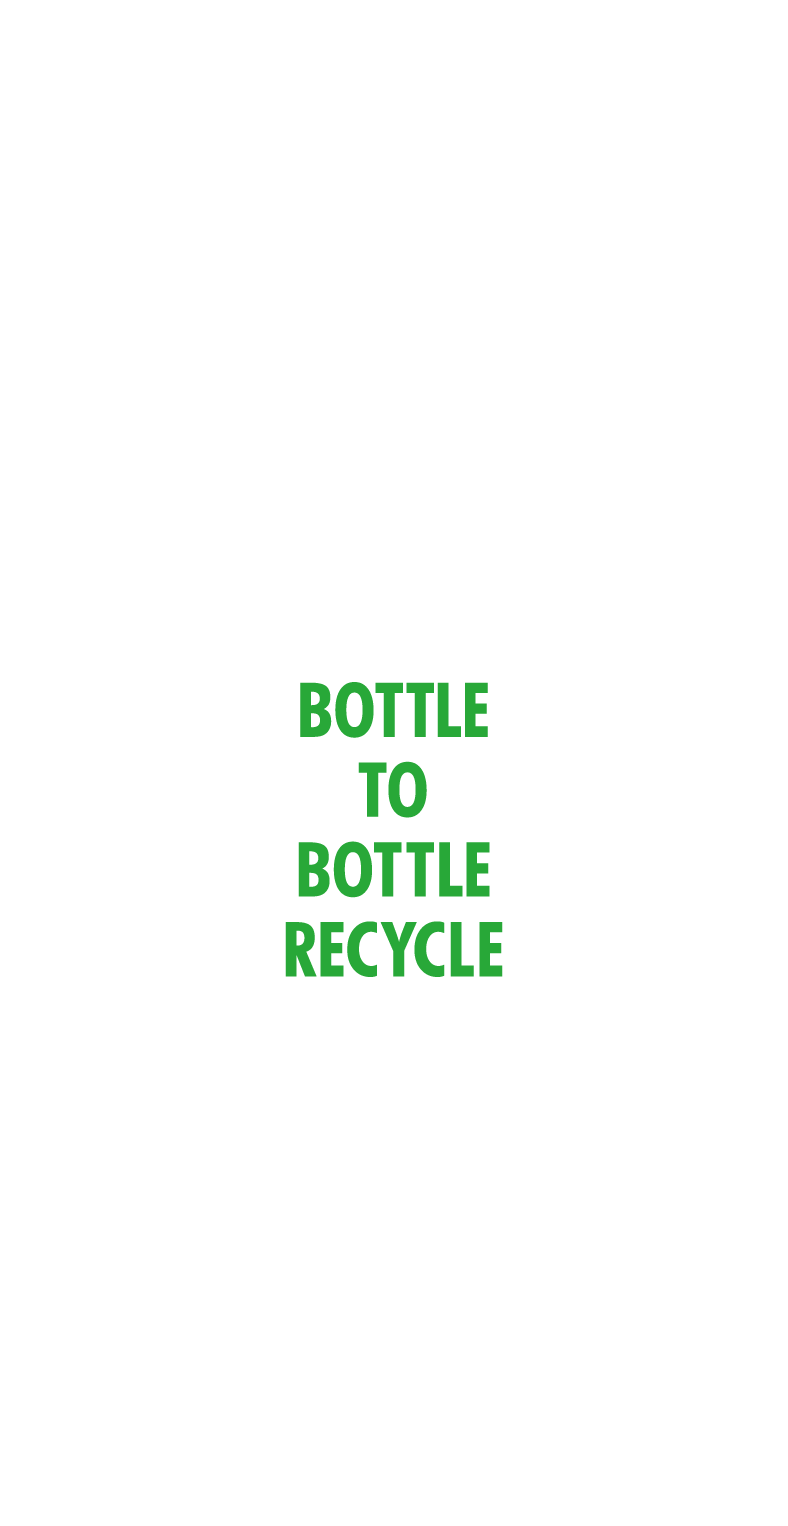 使用済みペットボトルを新しいペットボトルに。ボトルtoボトルリサイクル